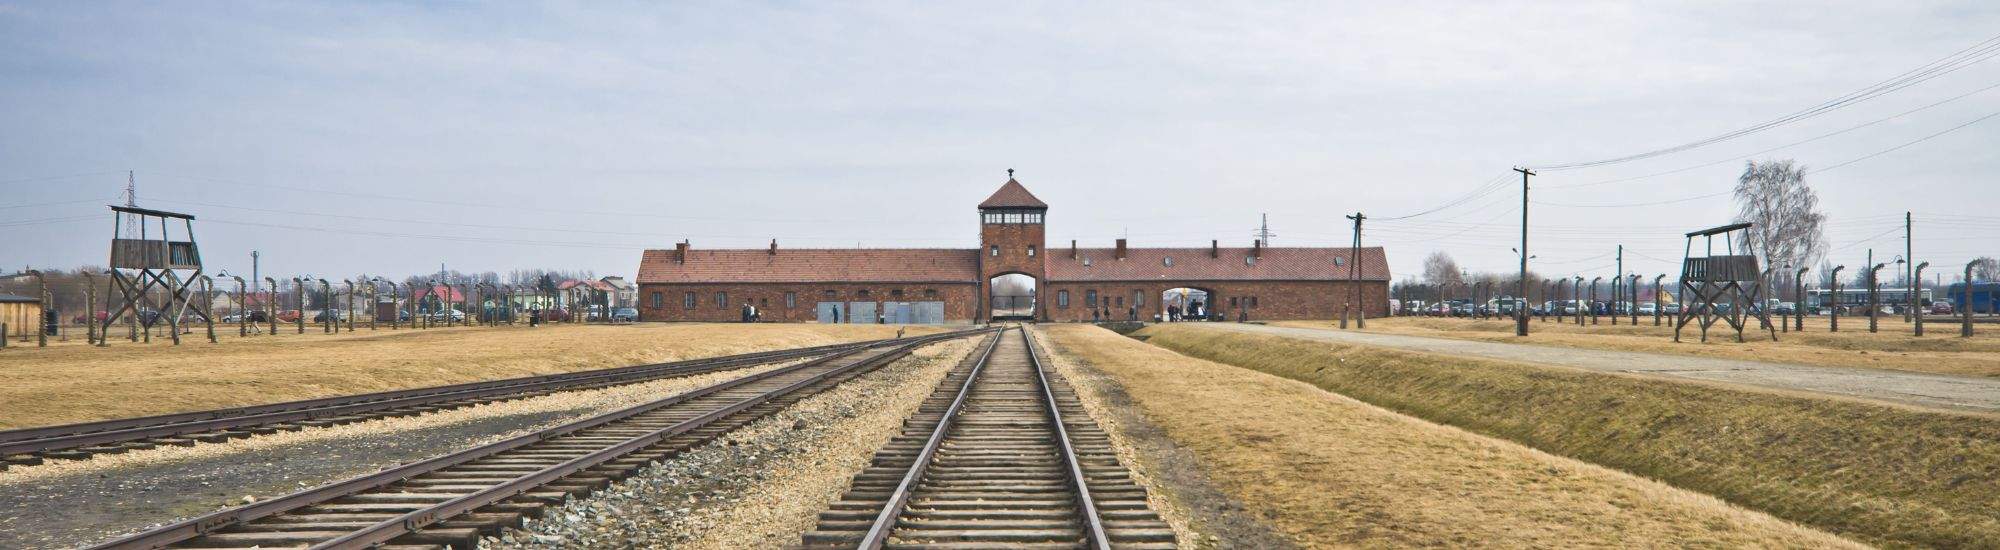 USA stöder virtuell rundtur av Auschwitz-Birkenau